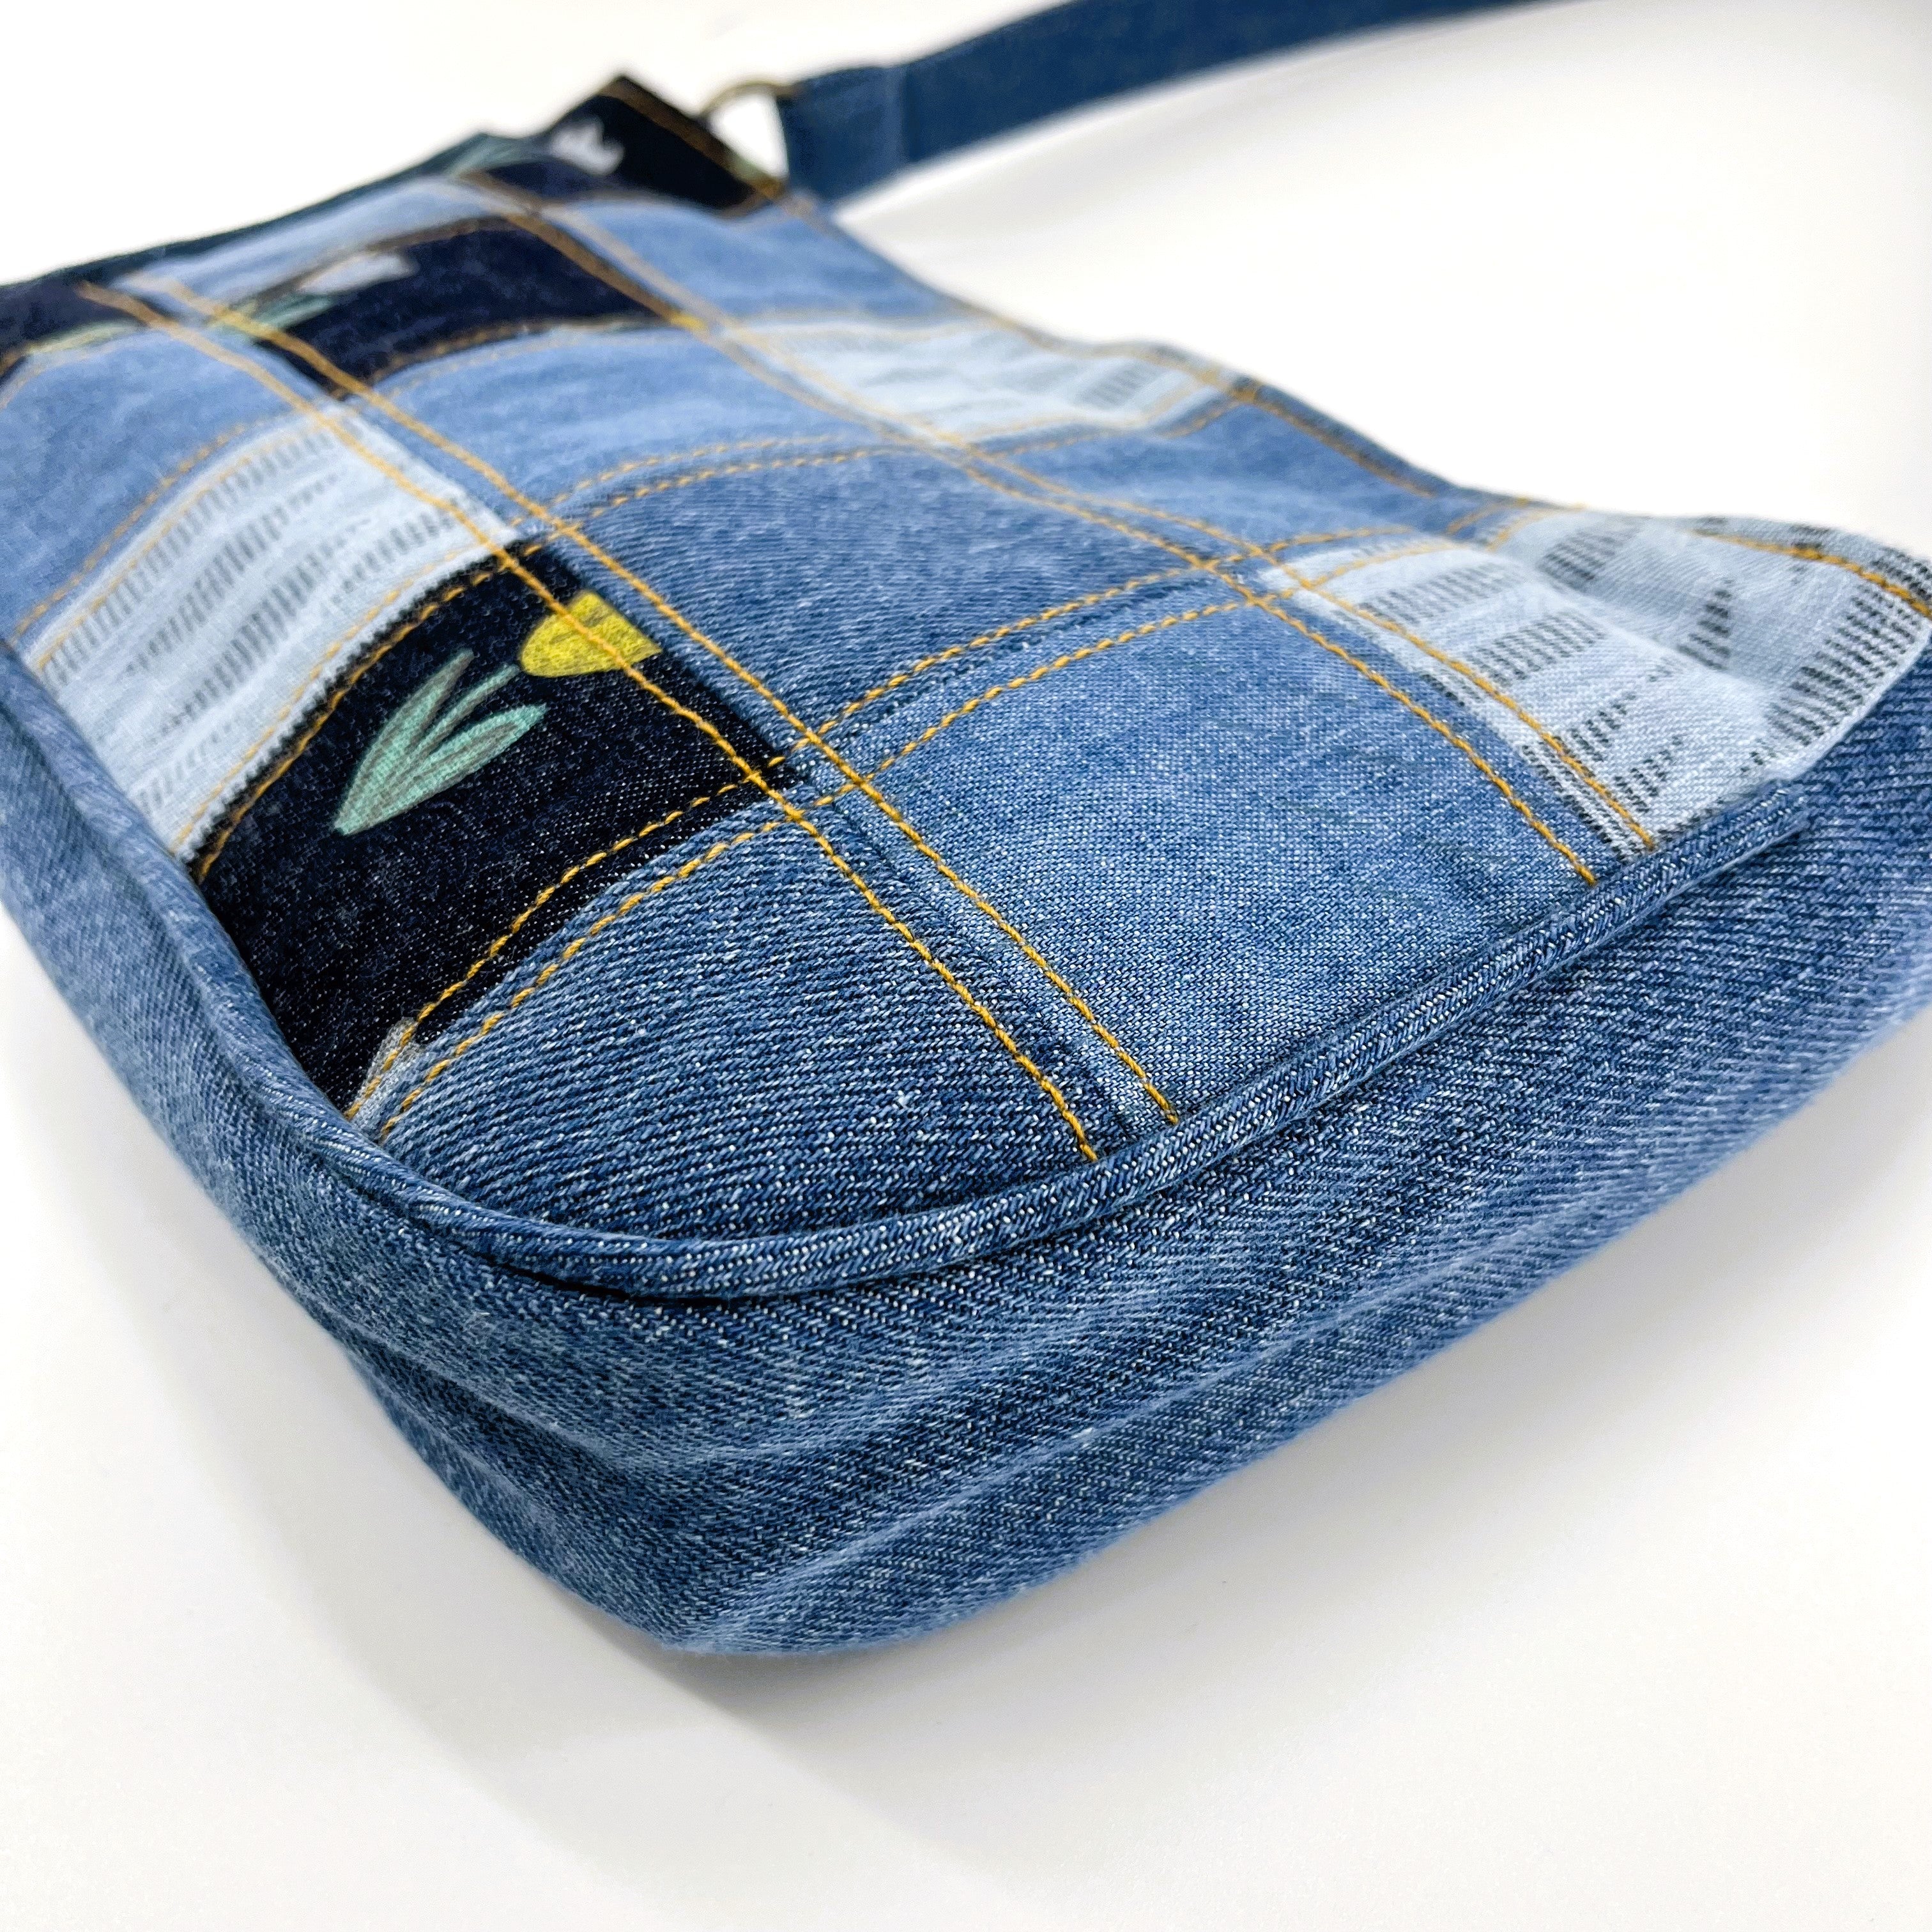 Trendy Denim Patchwork Shoulder Bag